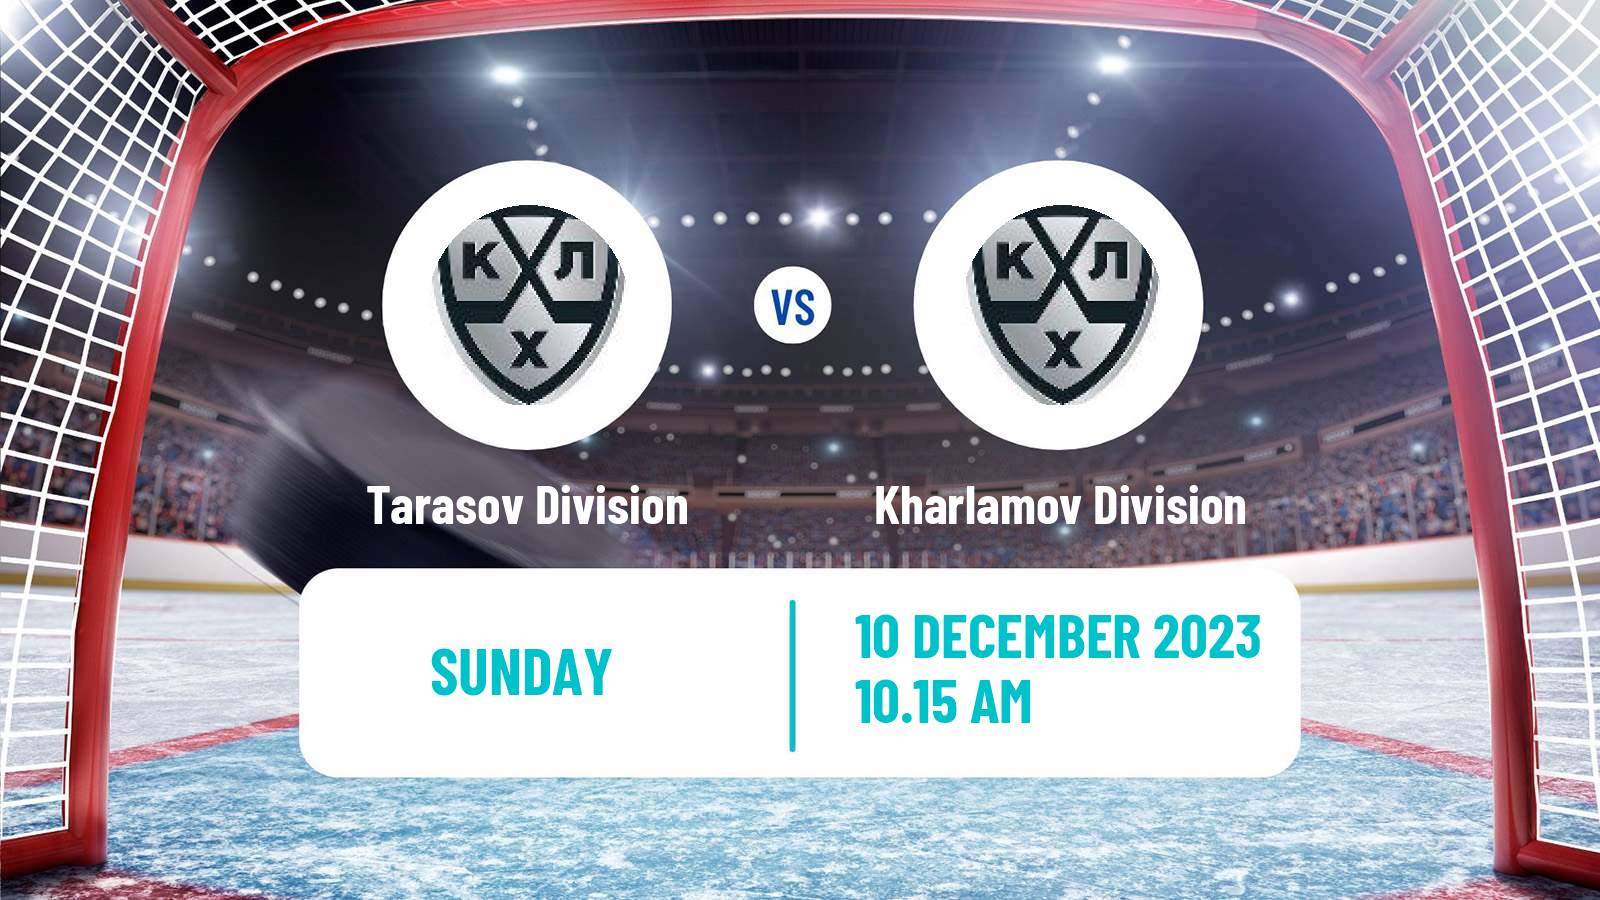 Hockey KHL Tarasov Division - Kharlamov Division